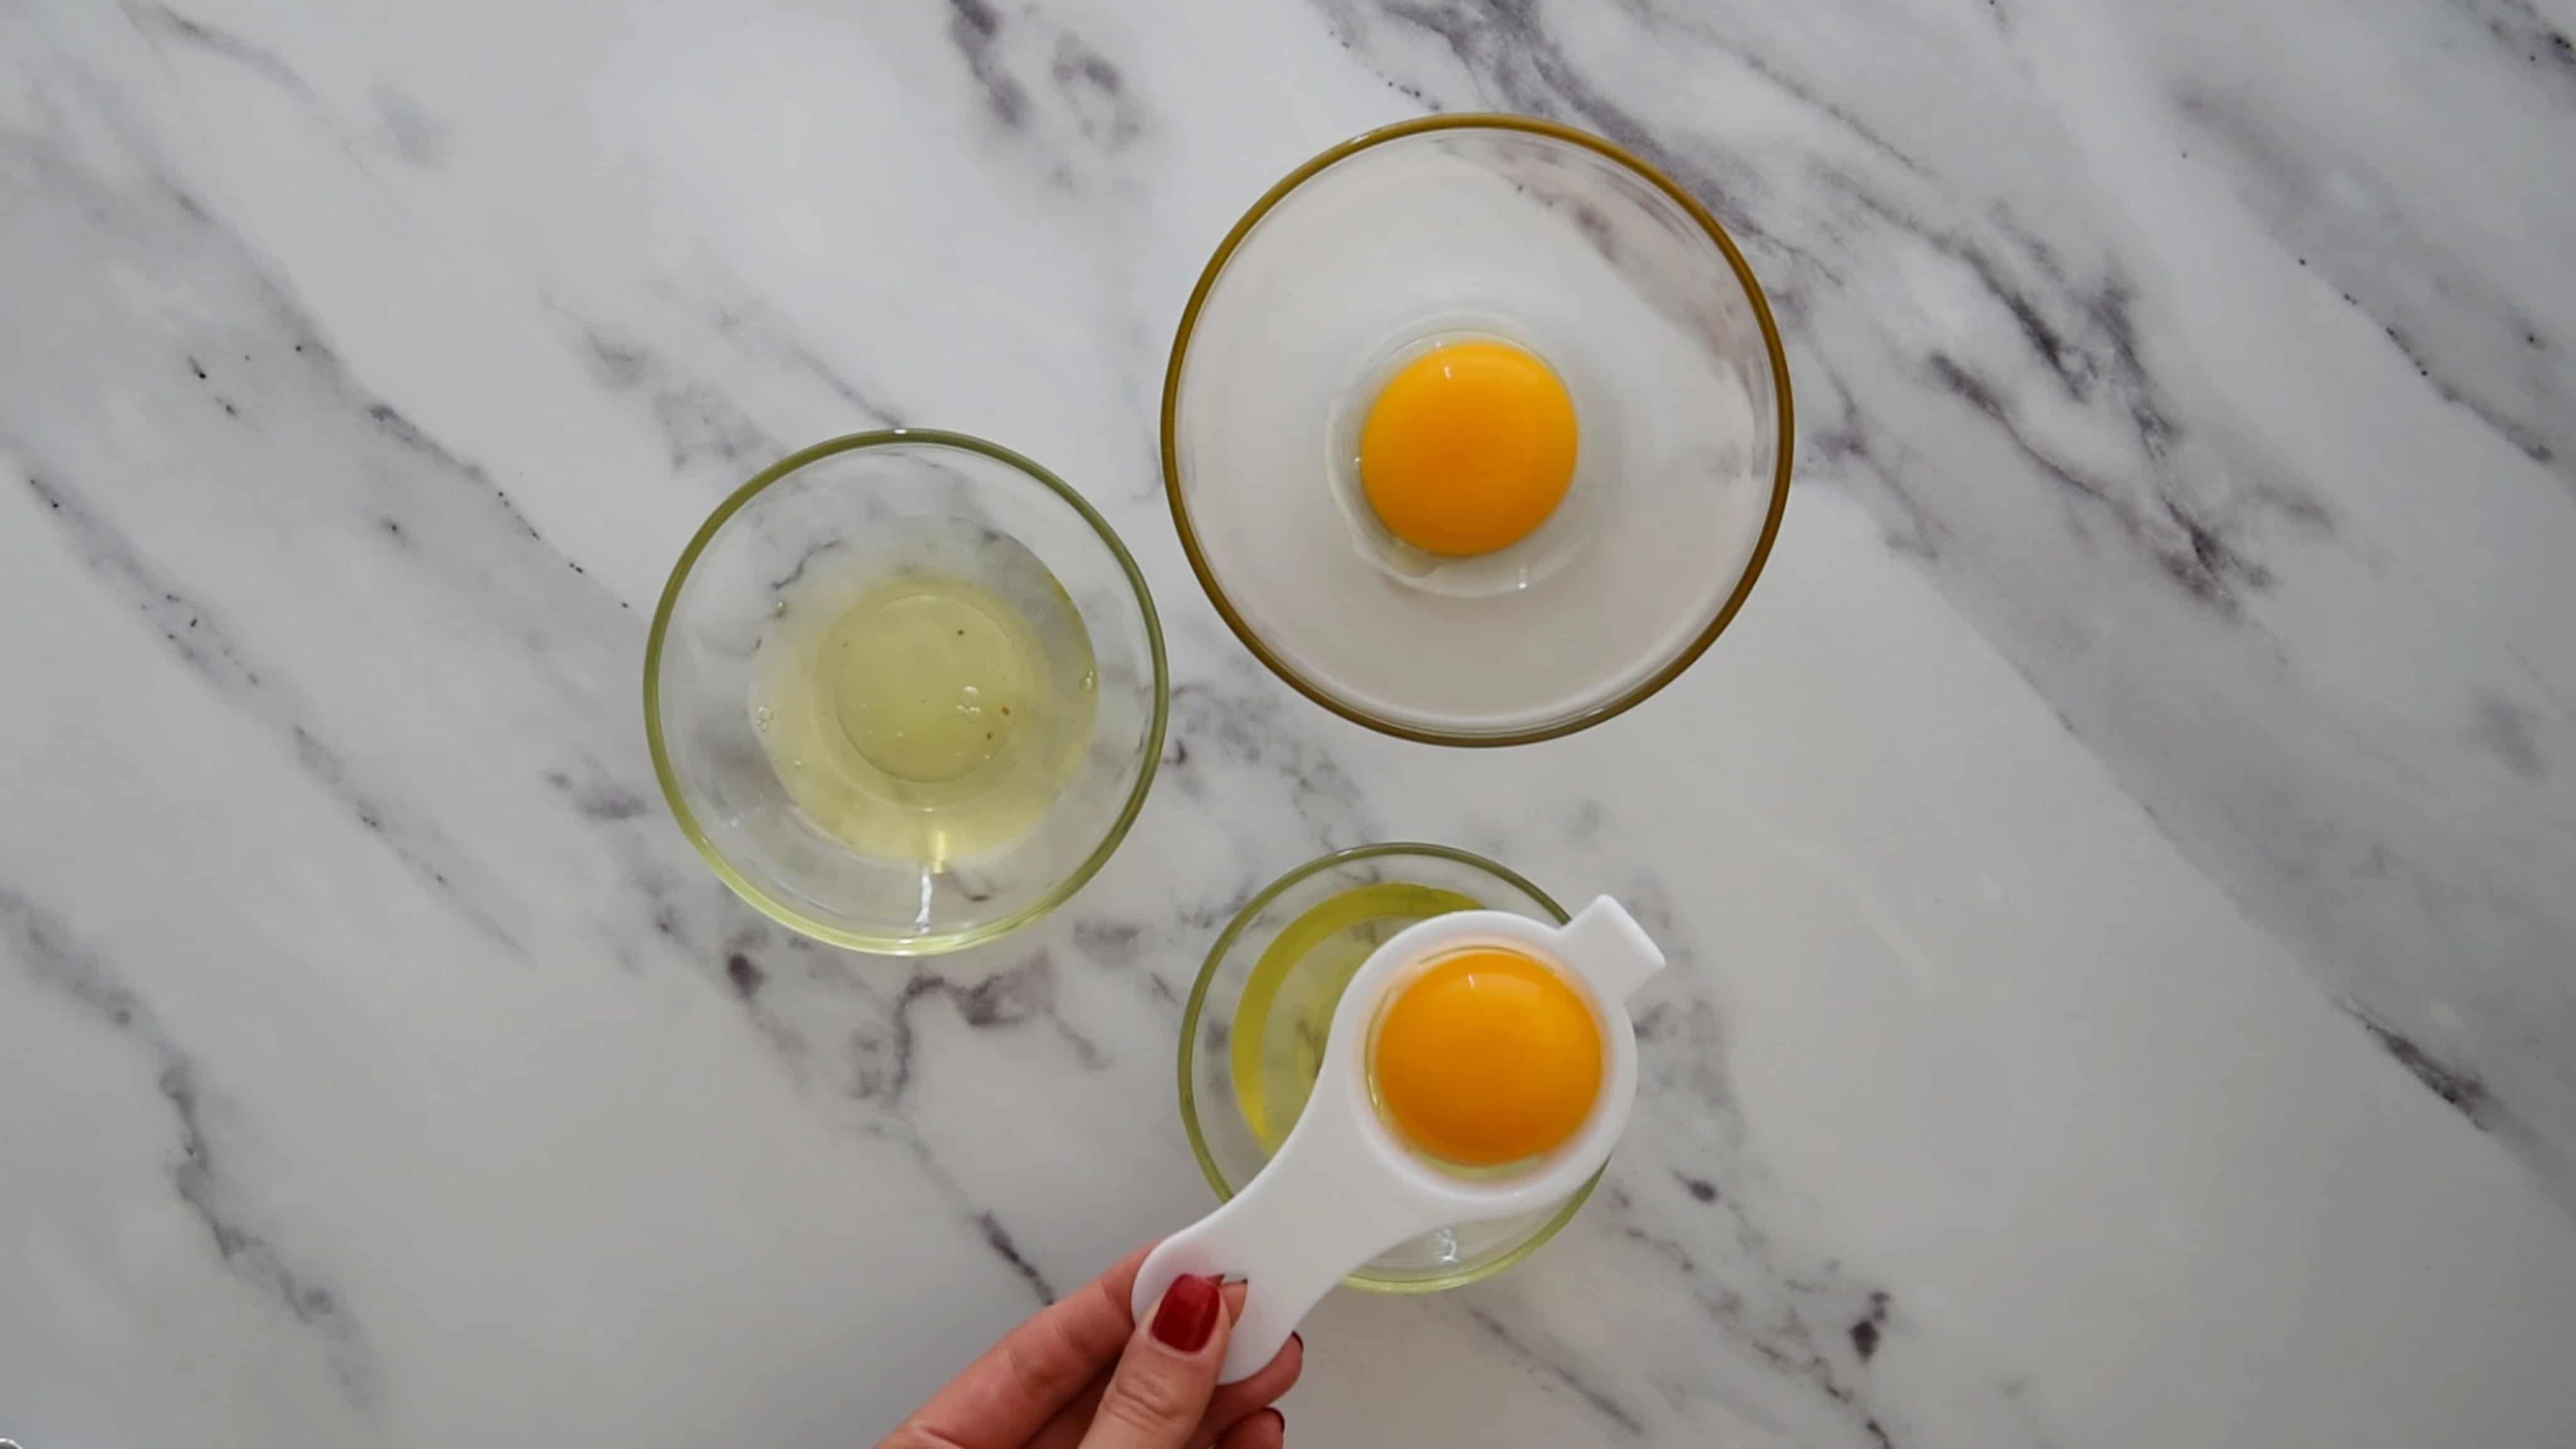 separating the egg whites